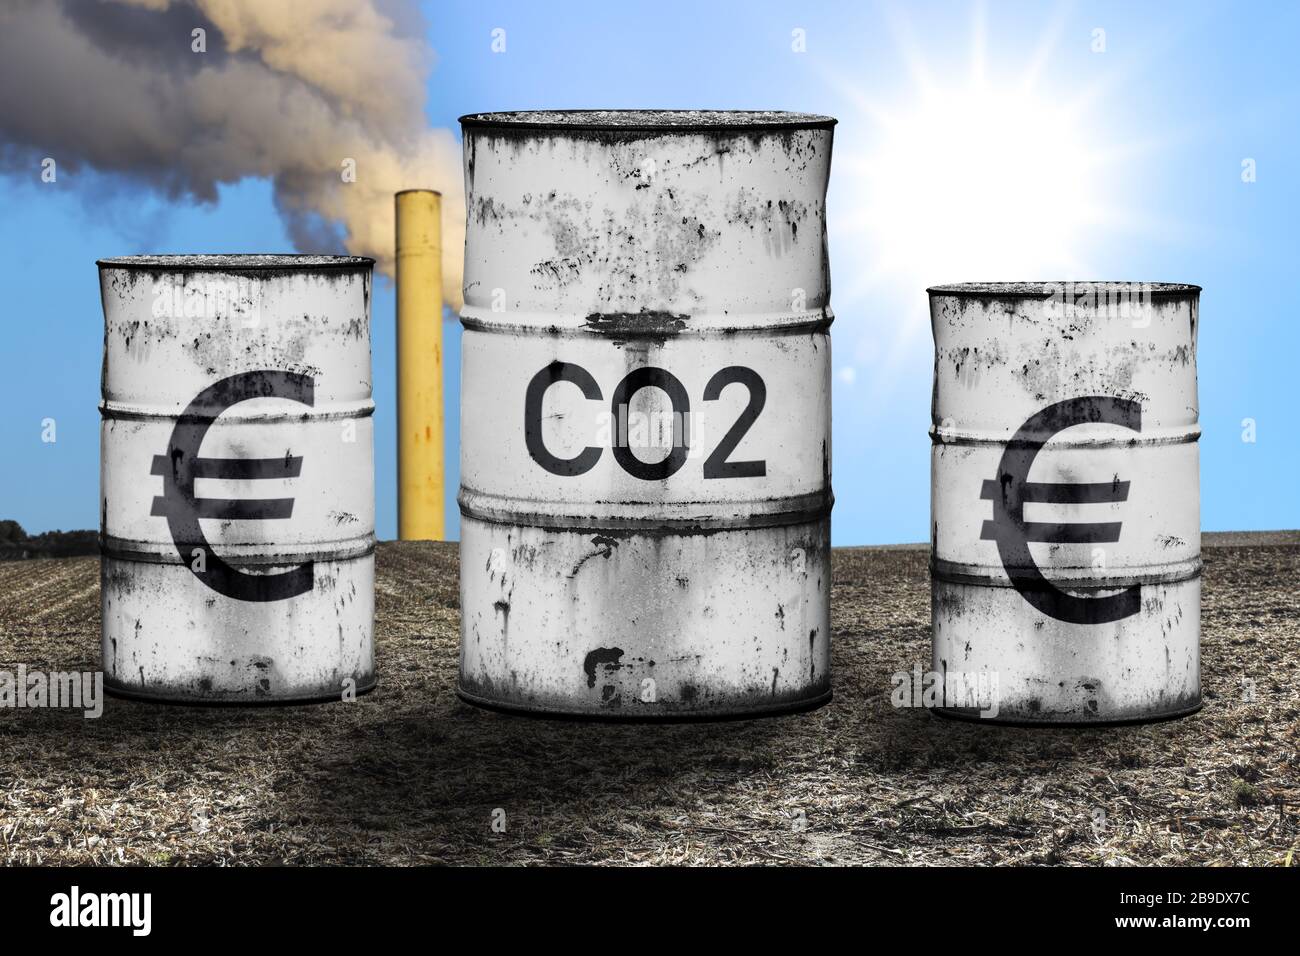 FOTOMONTAGE, Tonnen mit Label CO2 und Eurosign, symbolisches Foto CO2-Beprägung und CO2-Steuer, FOTOMONTAGE, Tonnen mit Auftrag CO2 und Eurozeichen, S Stockfoto